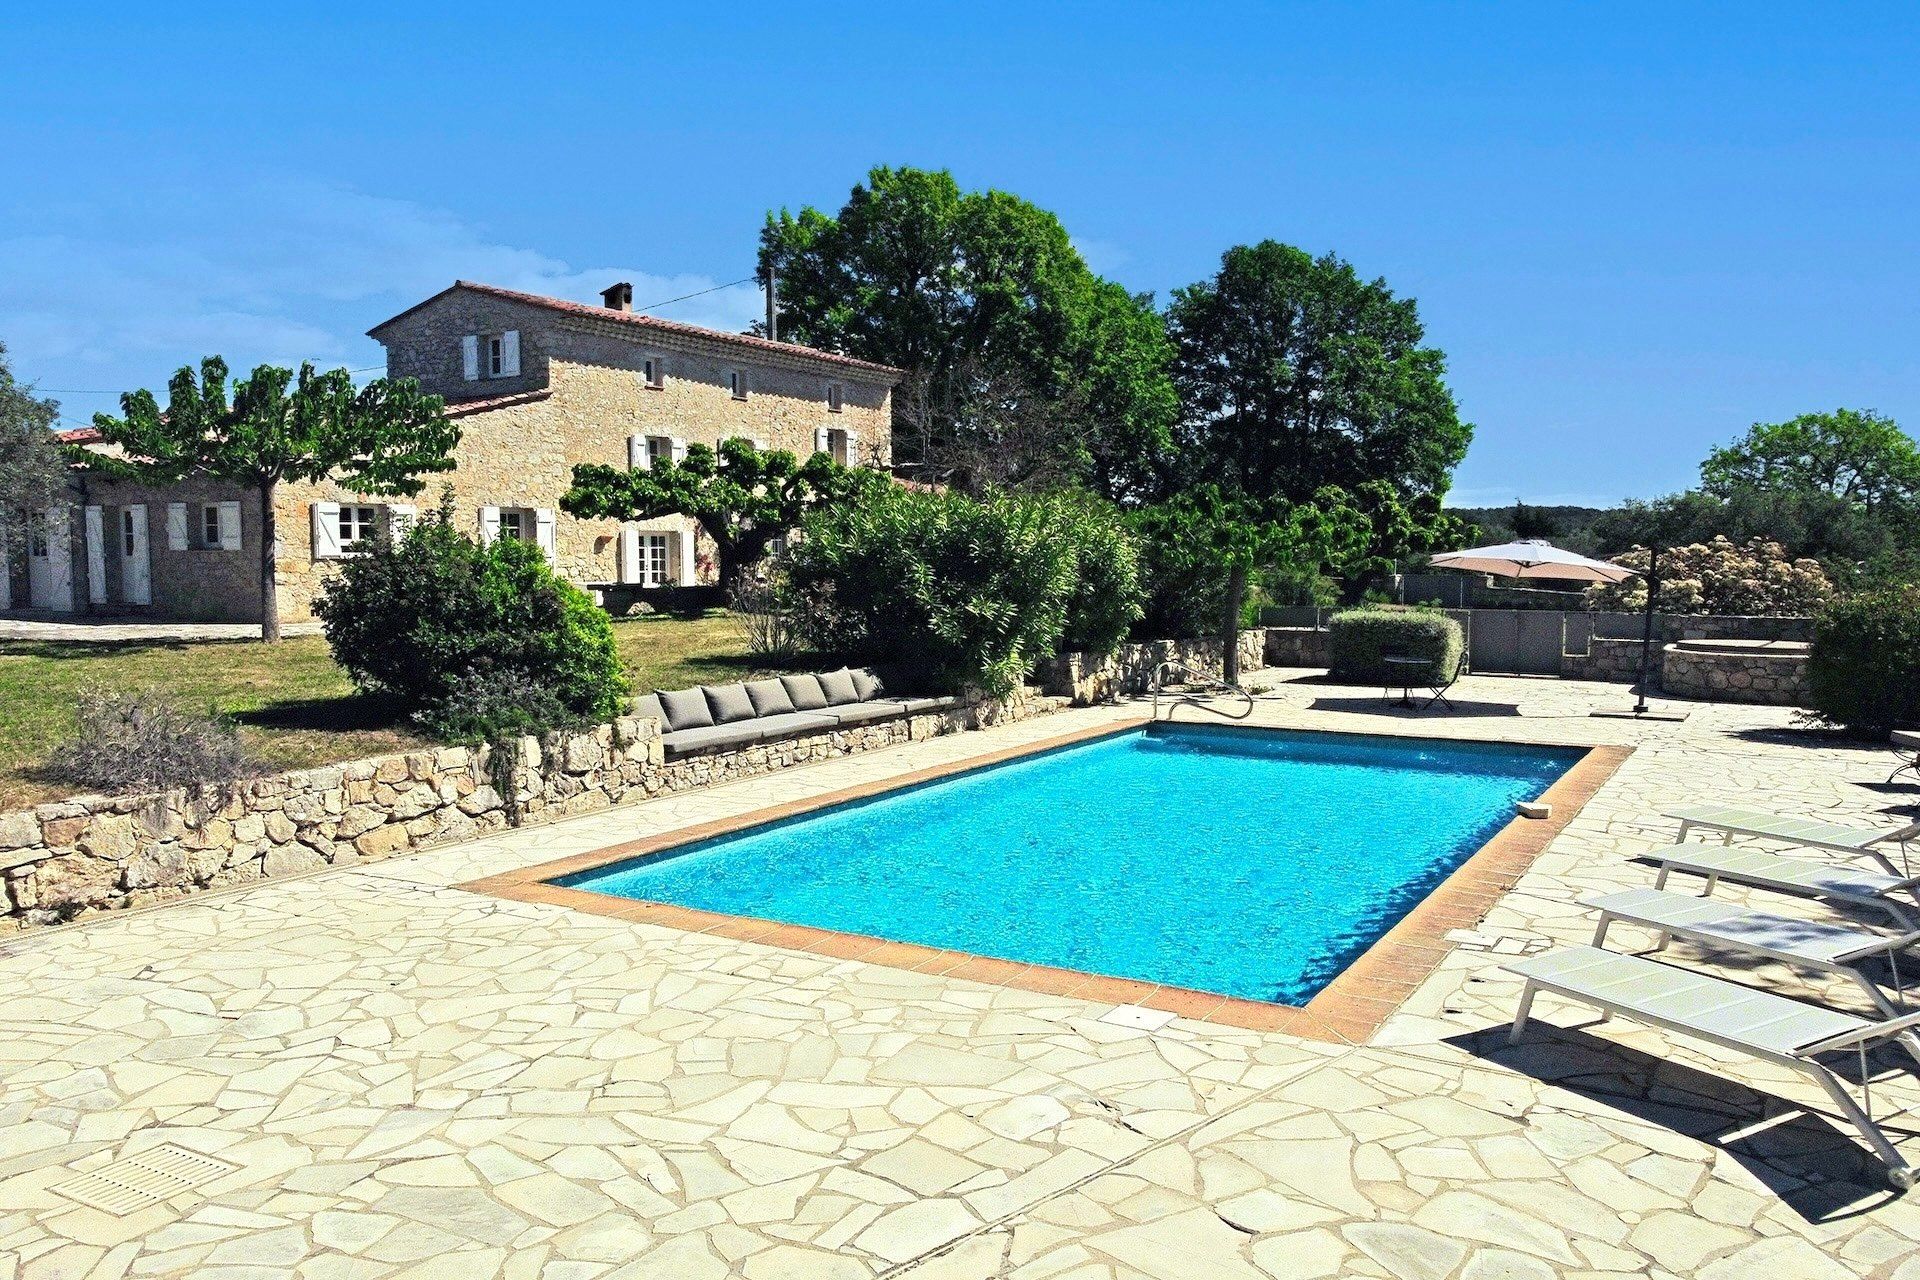 Méditerranée Location Mas with Private pool in Seillans, Côte d'Azur